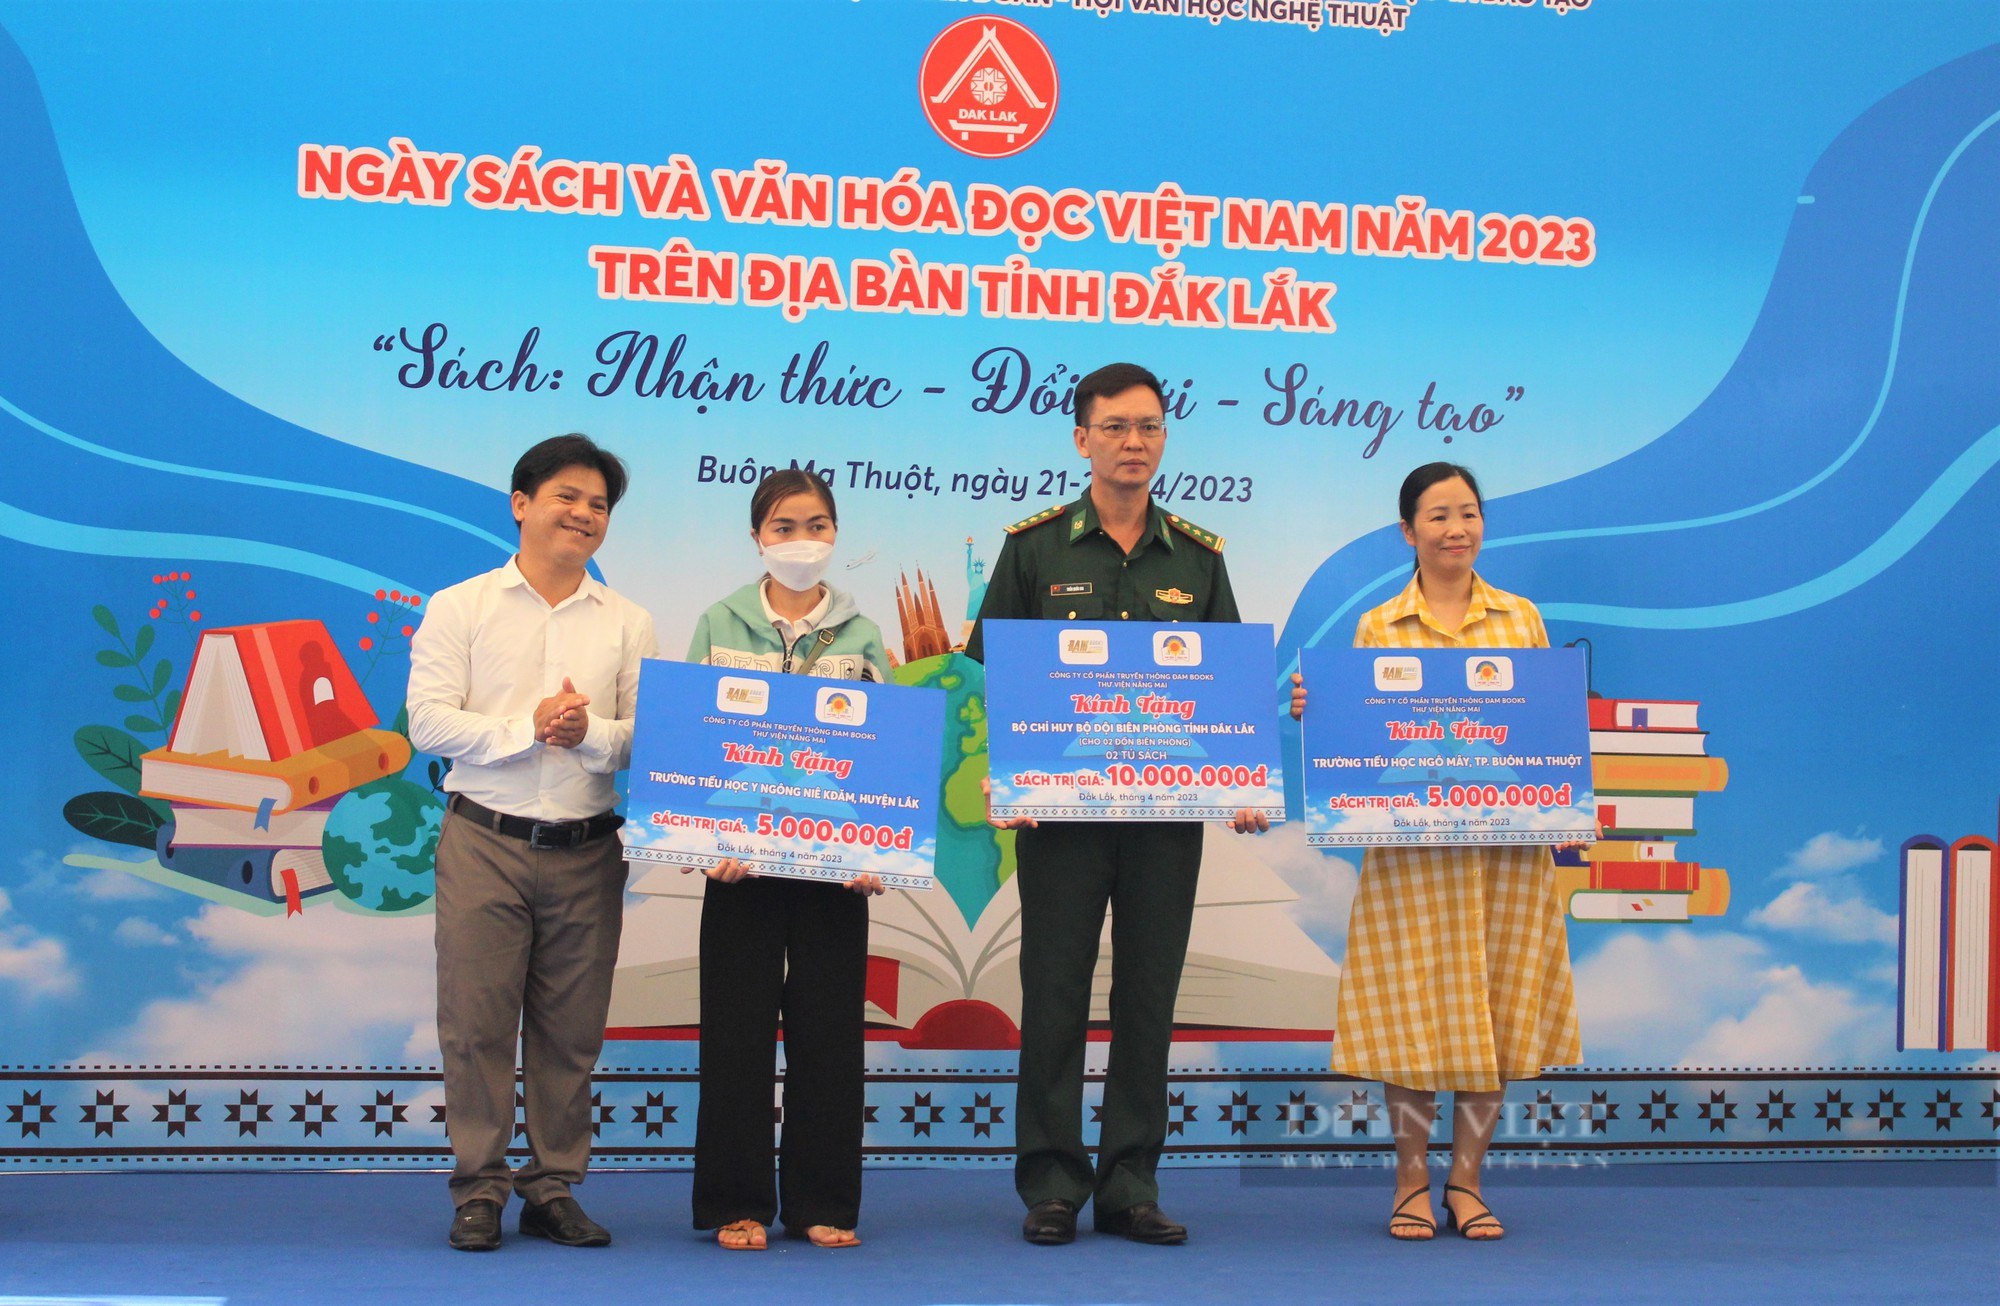 Đắk Lắk: Nhiều hoạt động hấp dẫn tại Ngày Sách và Văn hóa đọc Việt Nam 2023 - Ảnh 2.